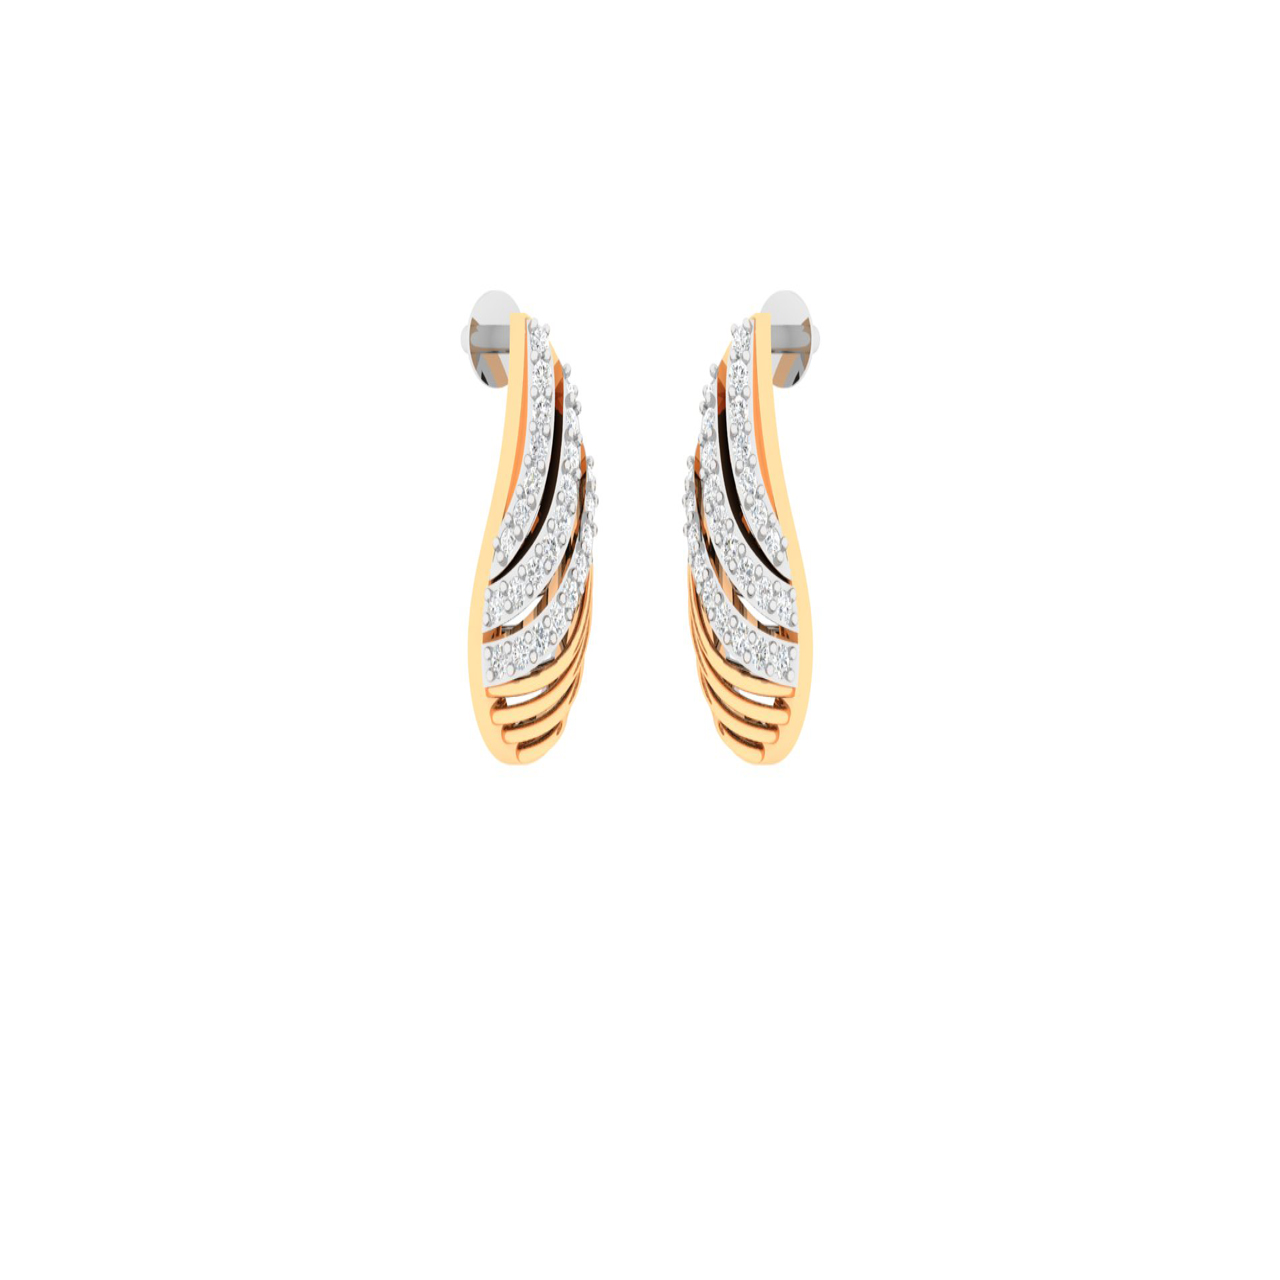 Shell Design Diamond Stud Earrings